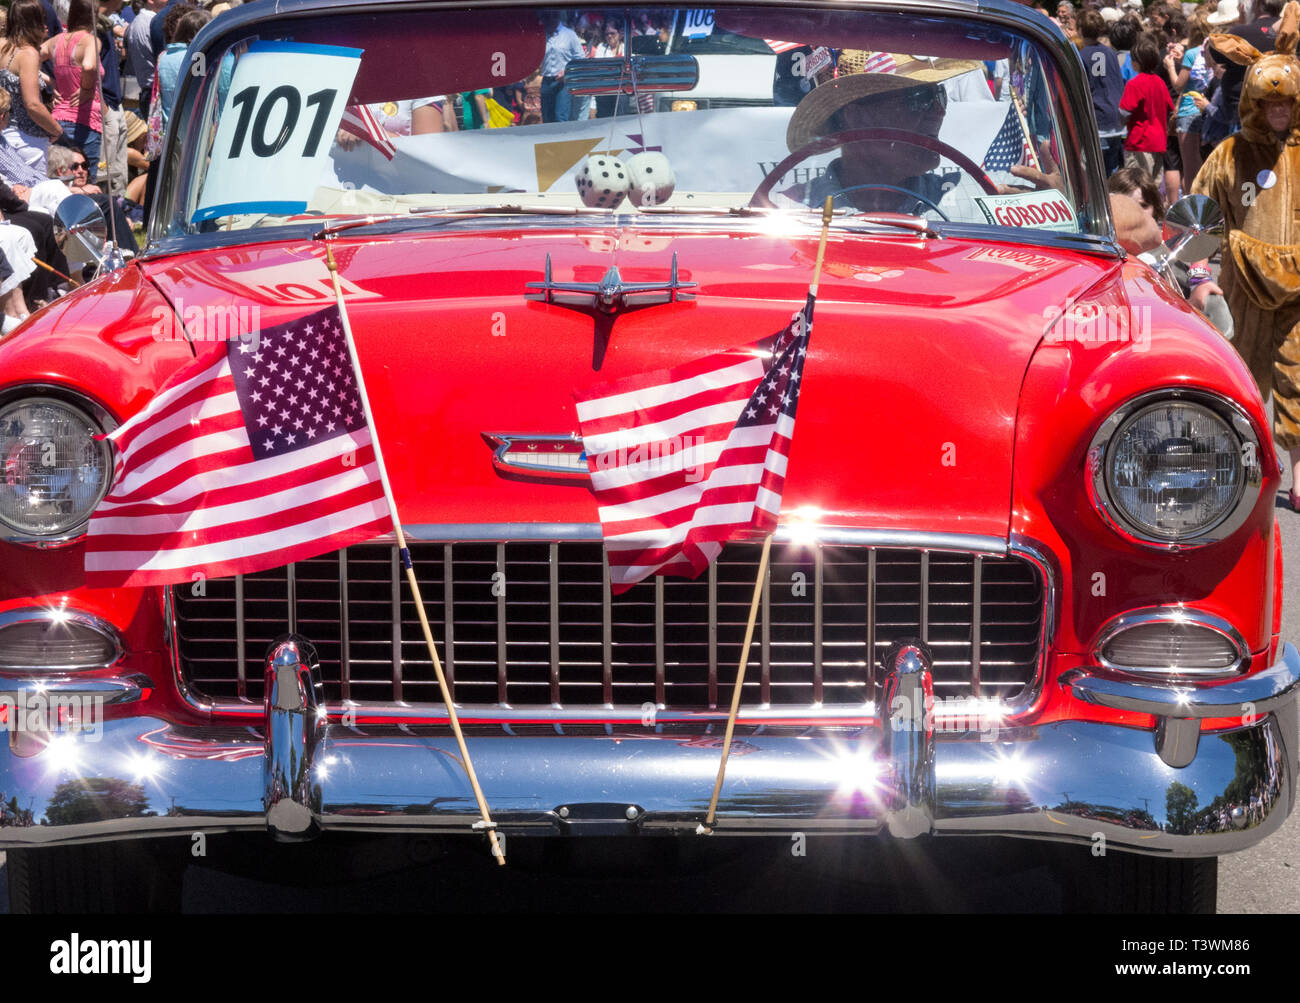 L'homme au volant d'une Chevrolet Bel Air classique automobile voiture décorée de drapeaux américains dans une petite ville traditionnelle parade du 4 juillet Banque D'Images